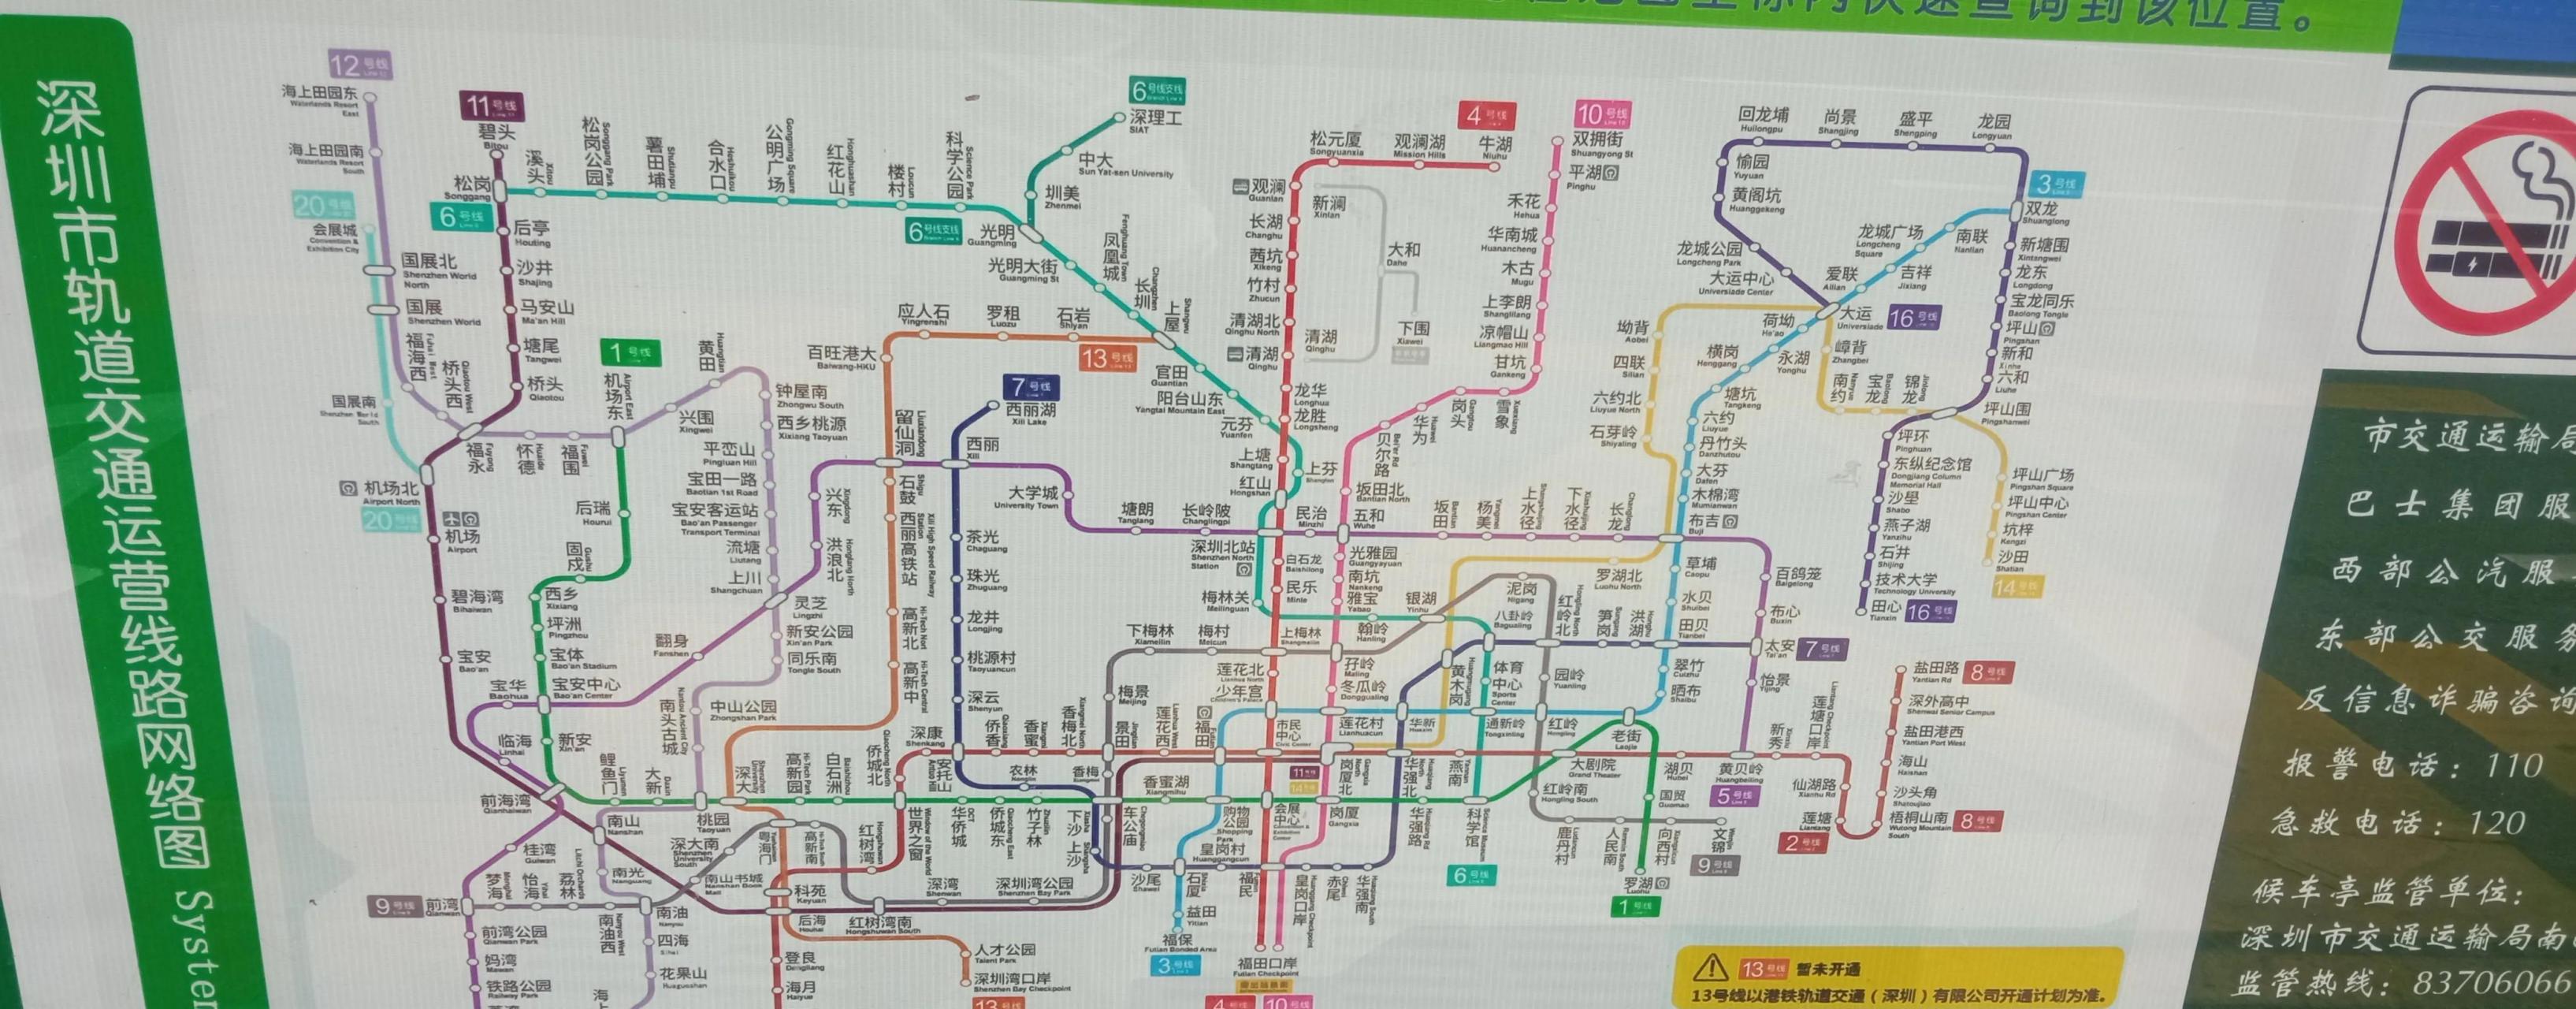 深圳地铁13号线能否有点节操?